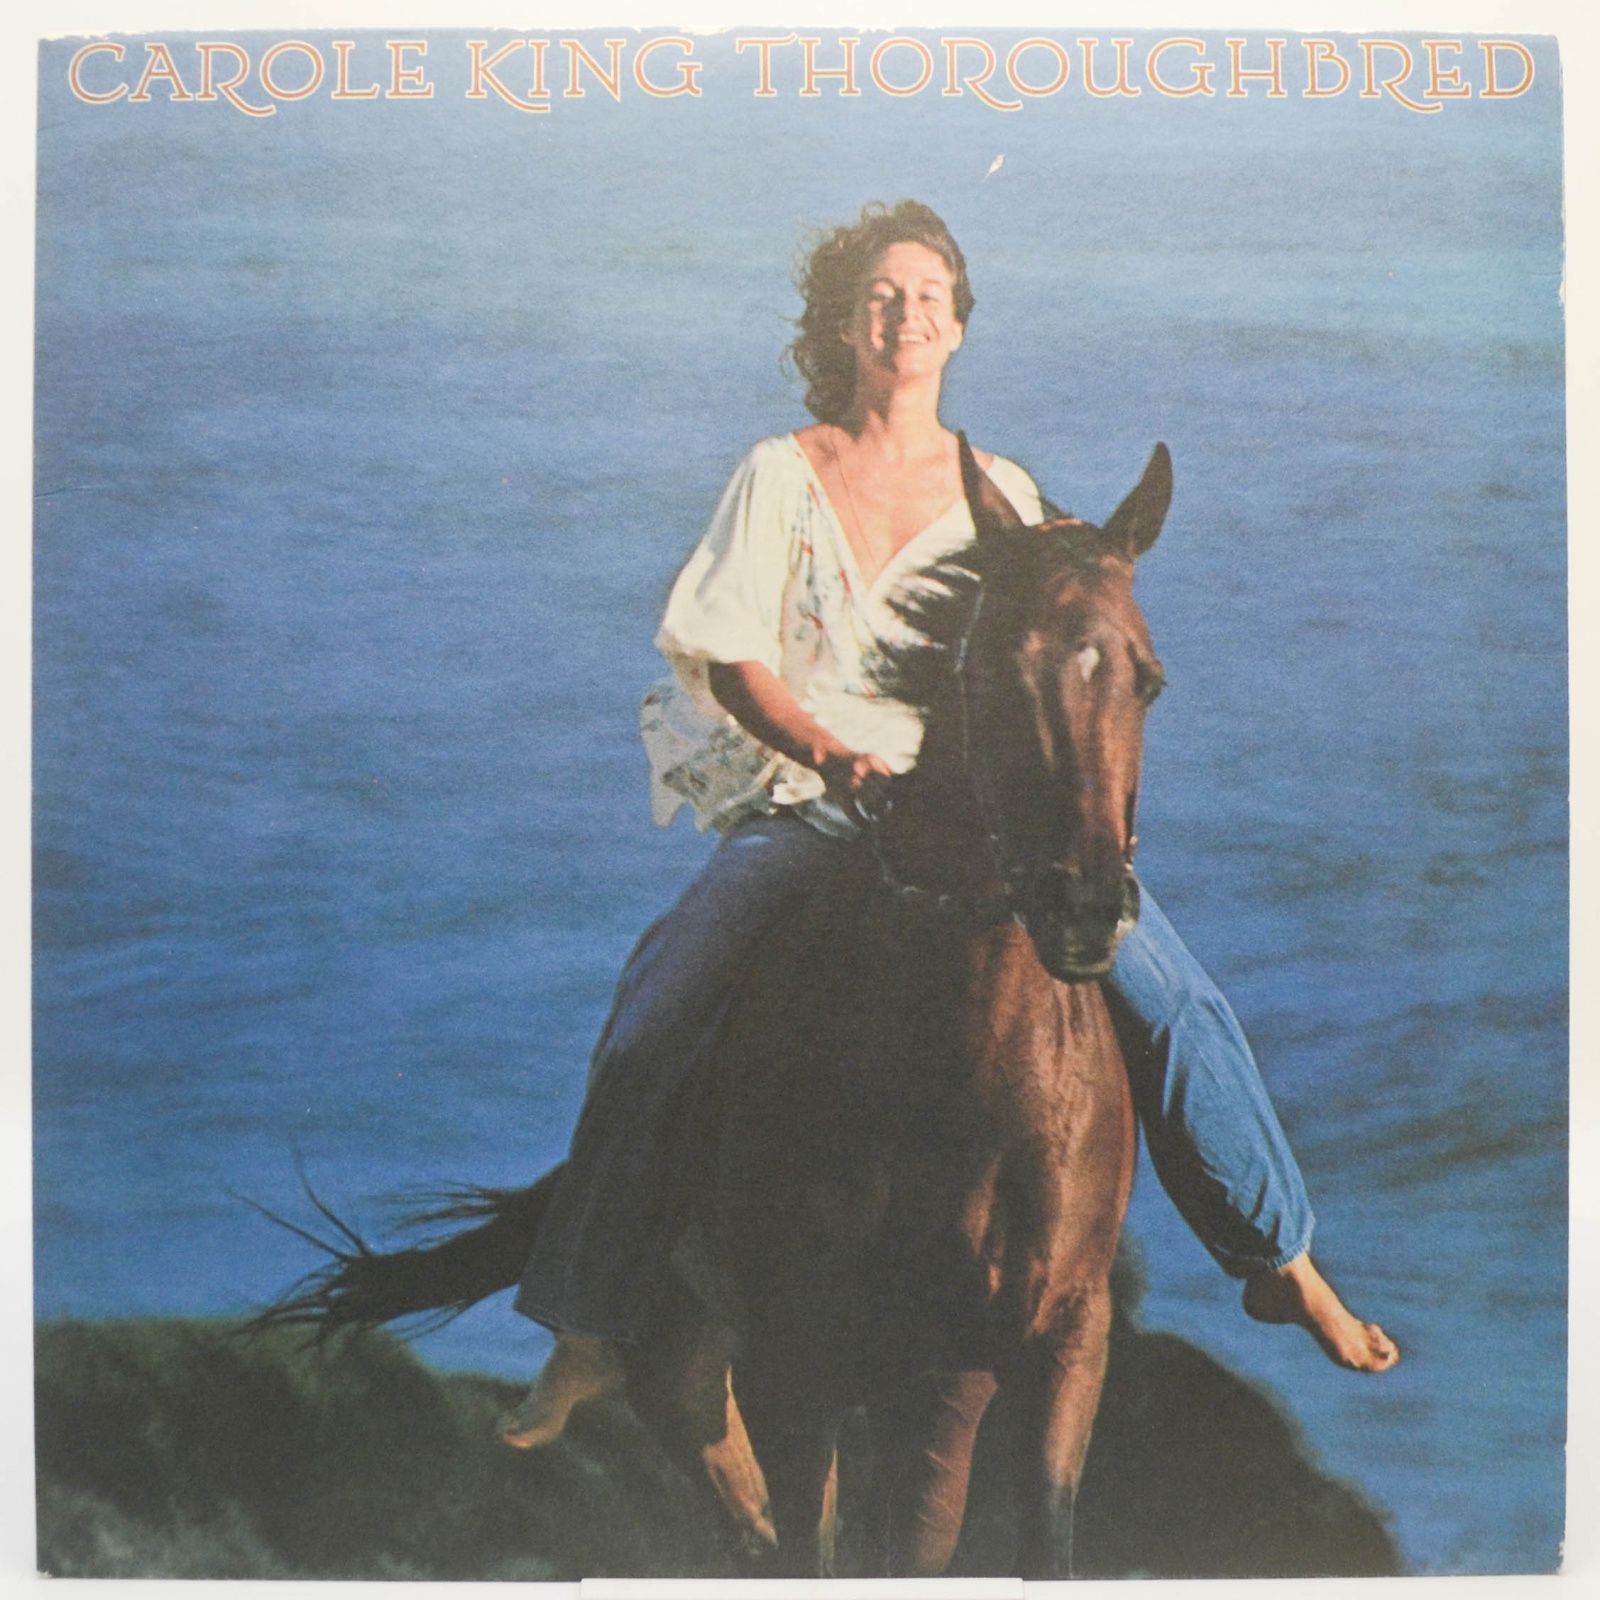 Carole King — Thoroughbred, 1975